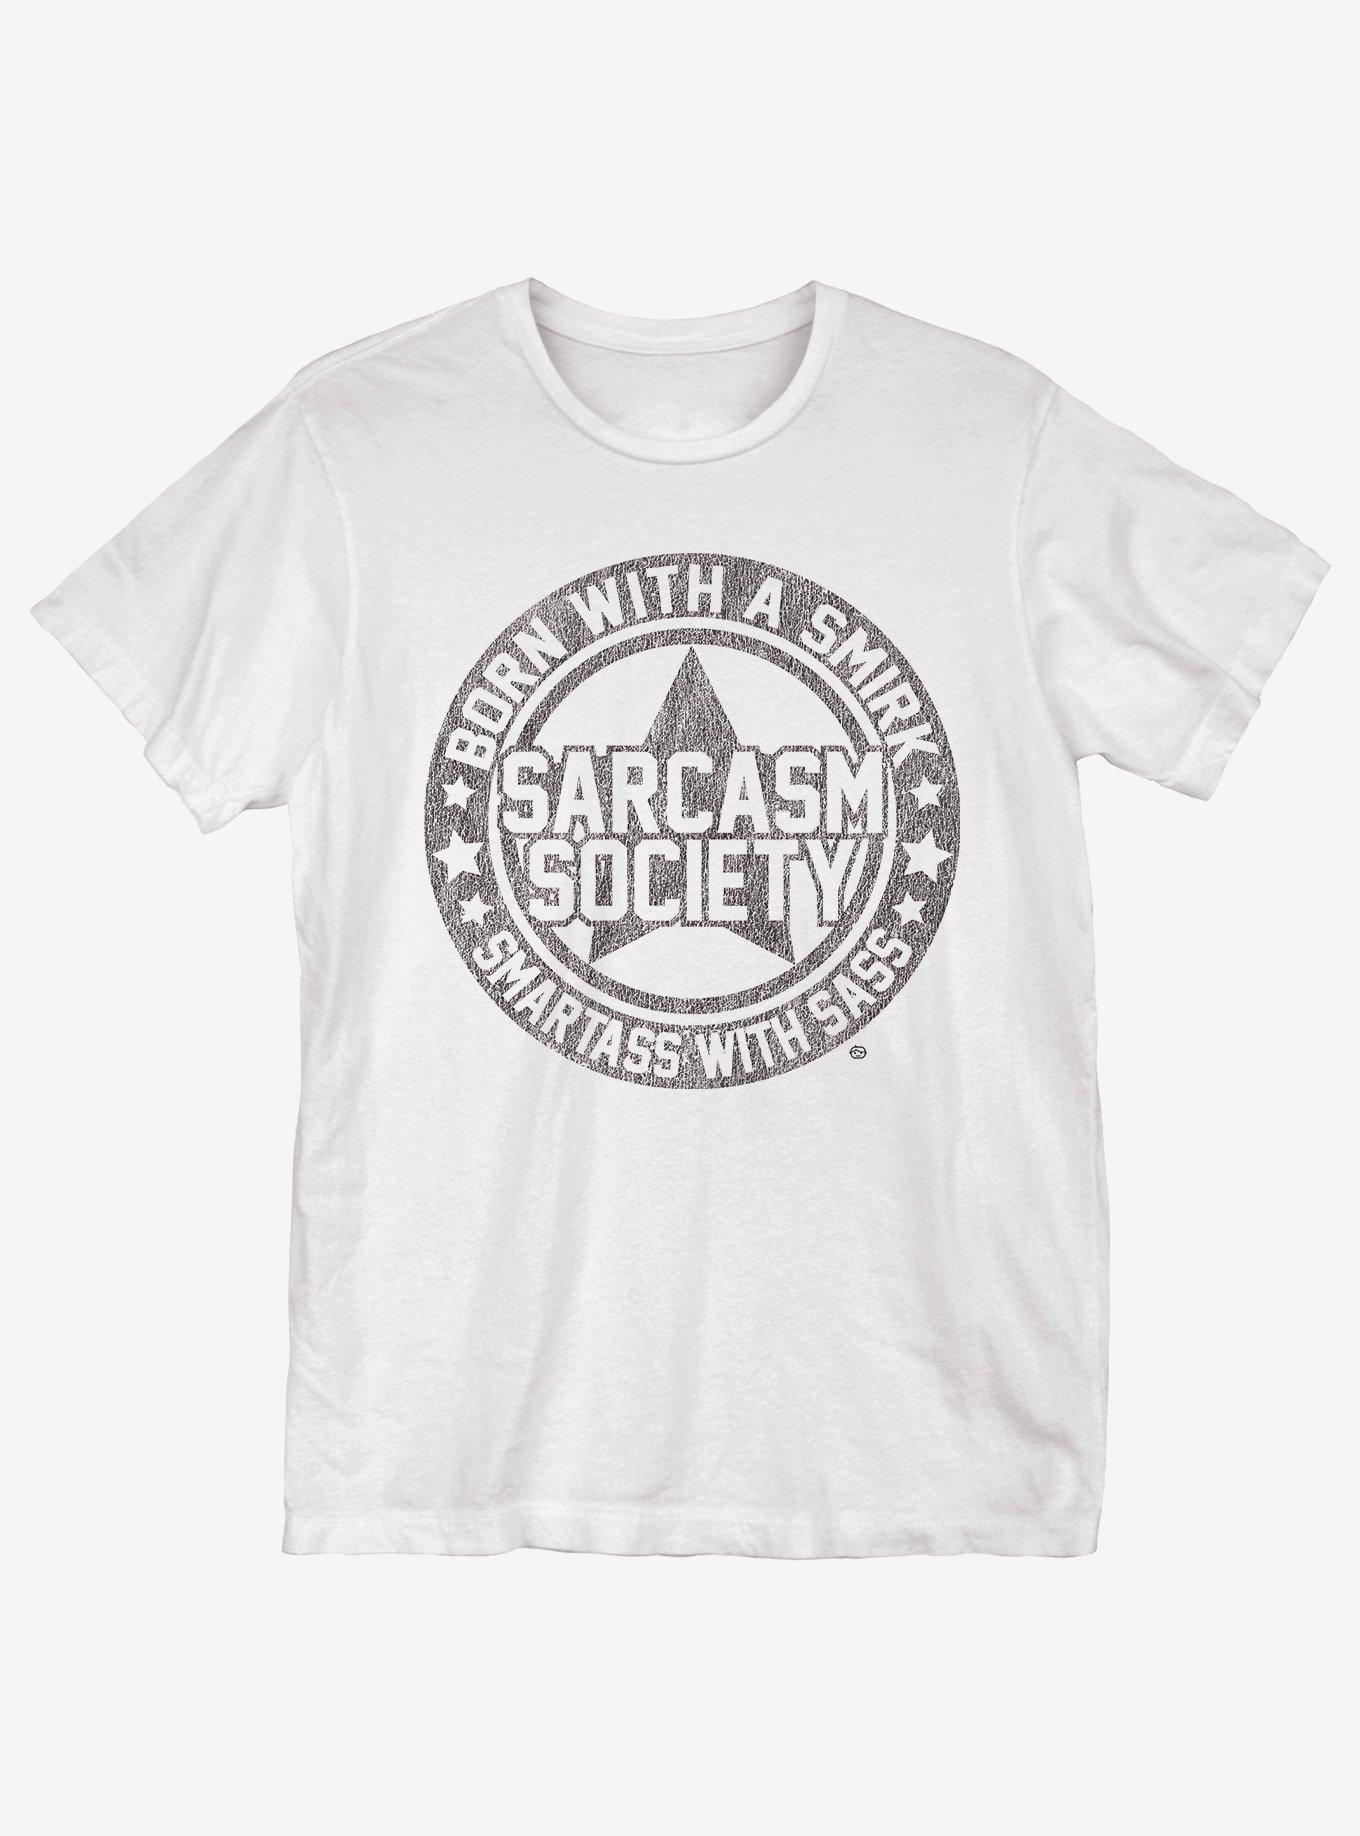 Sarcasm Society T-Shirt, WHITE, hi-res